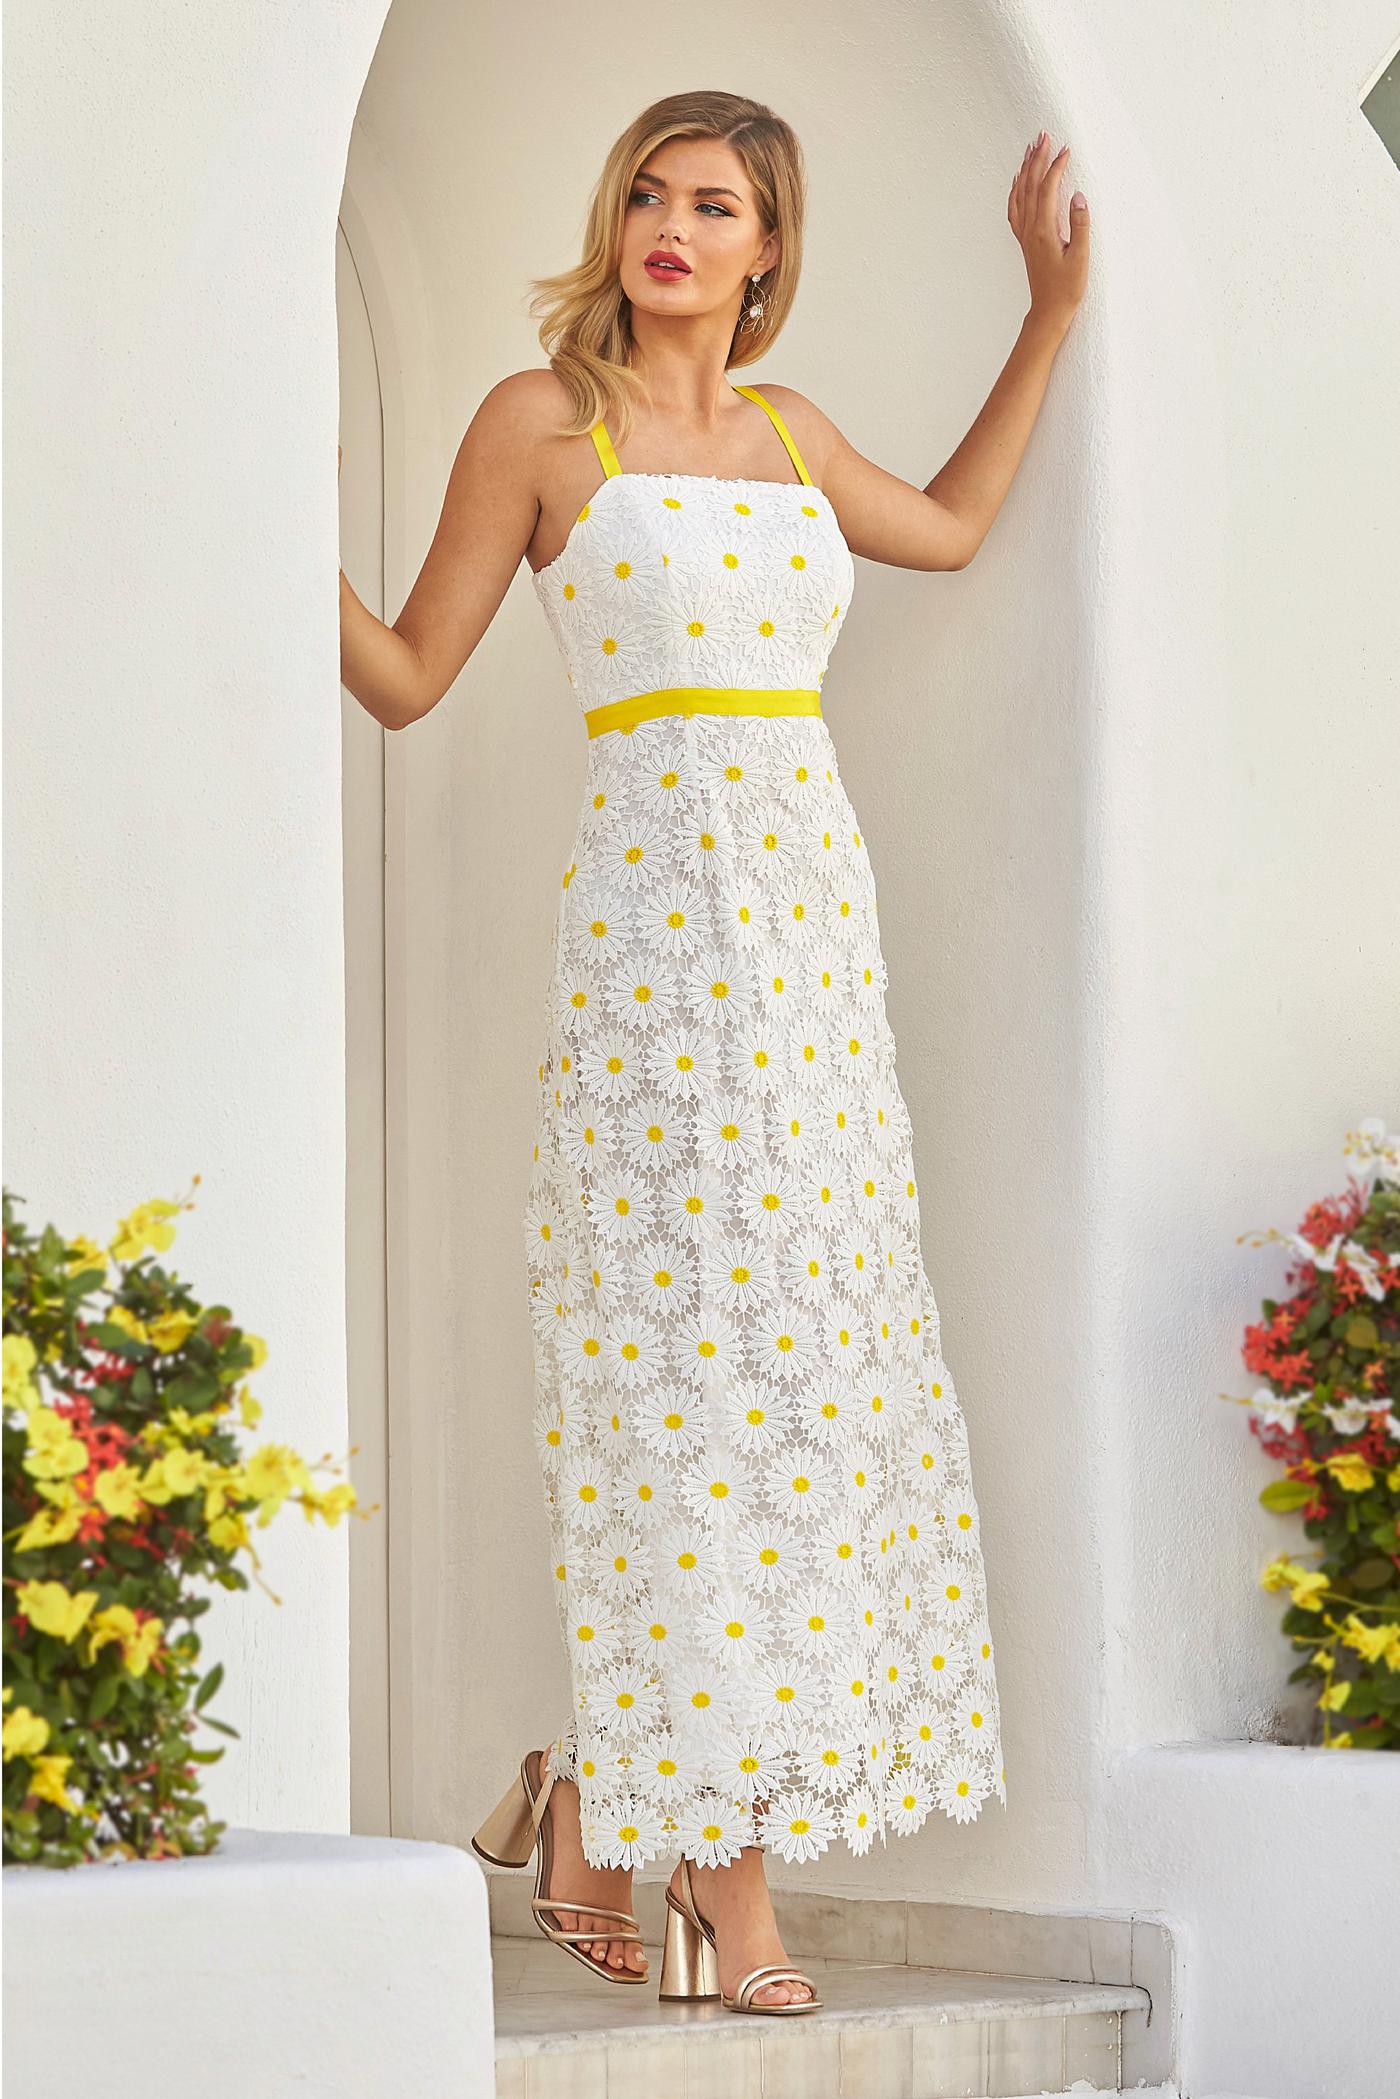 Daisy Lace Maxi Dress - White/Yellow